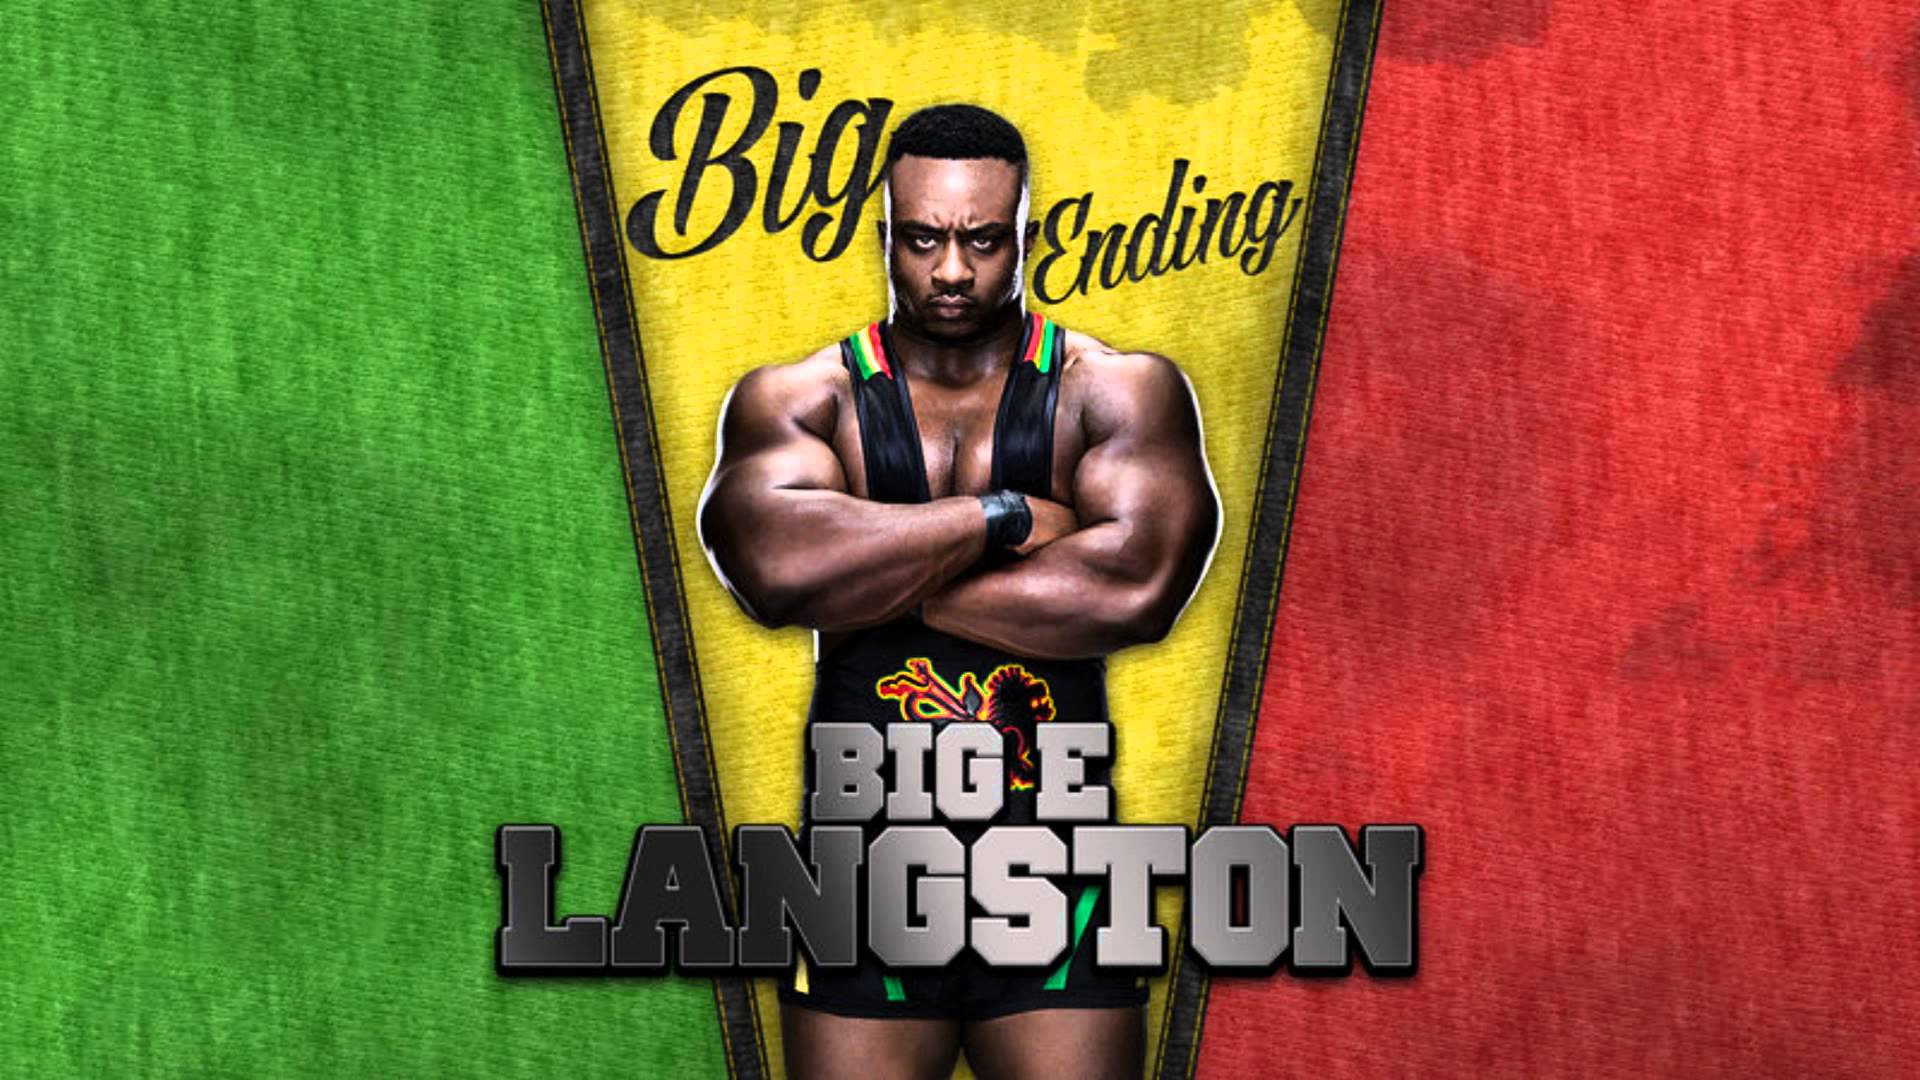 Big E Langston HD Wallpaper Free Download. WWE HD WALLPAPER FREE